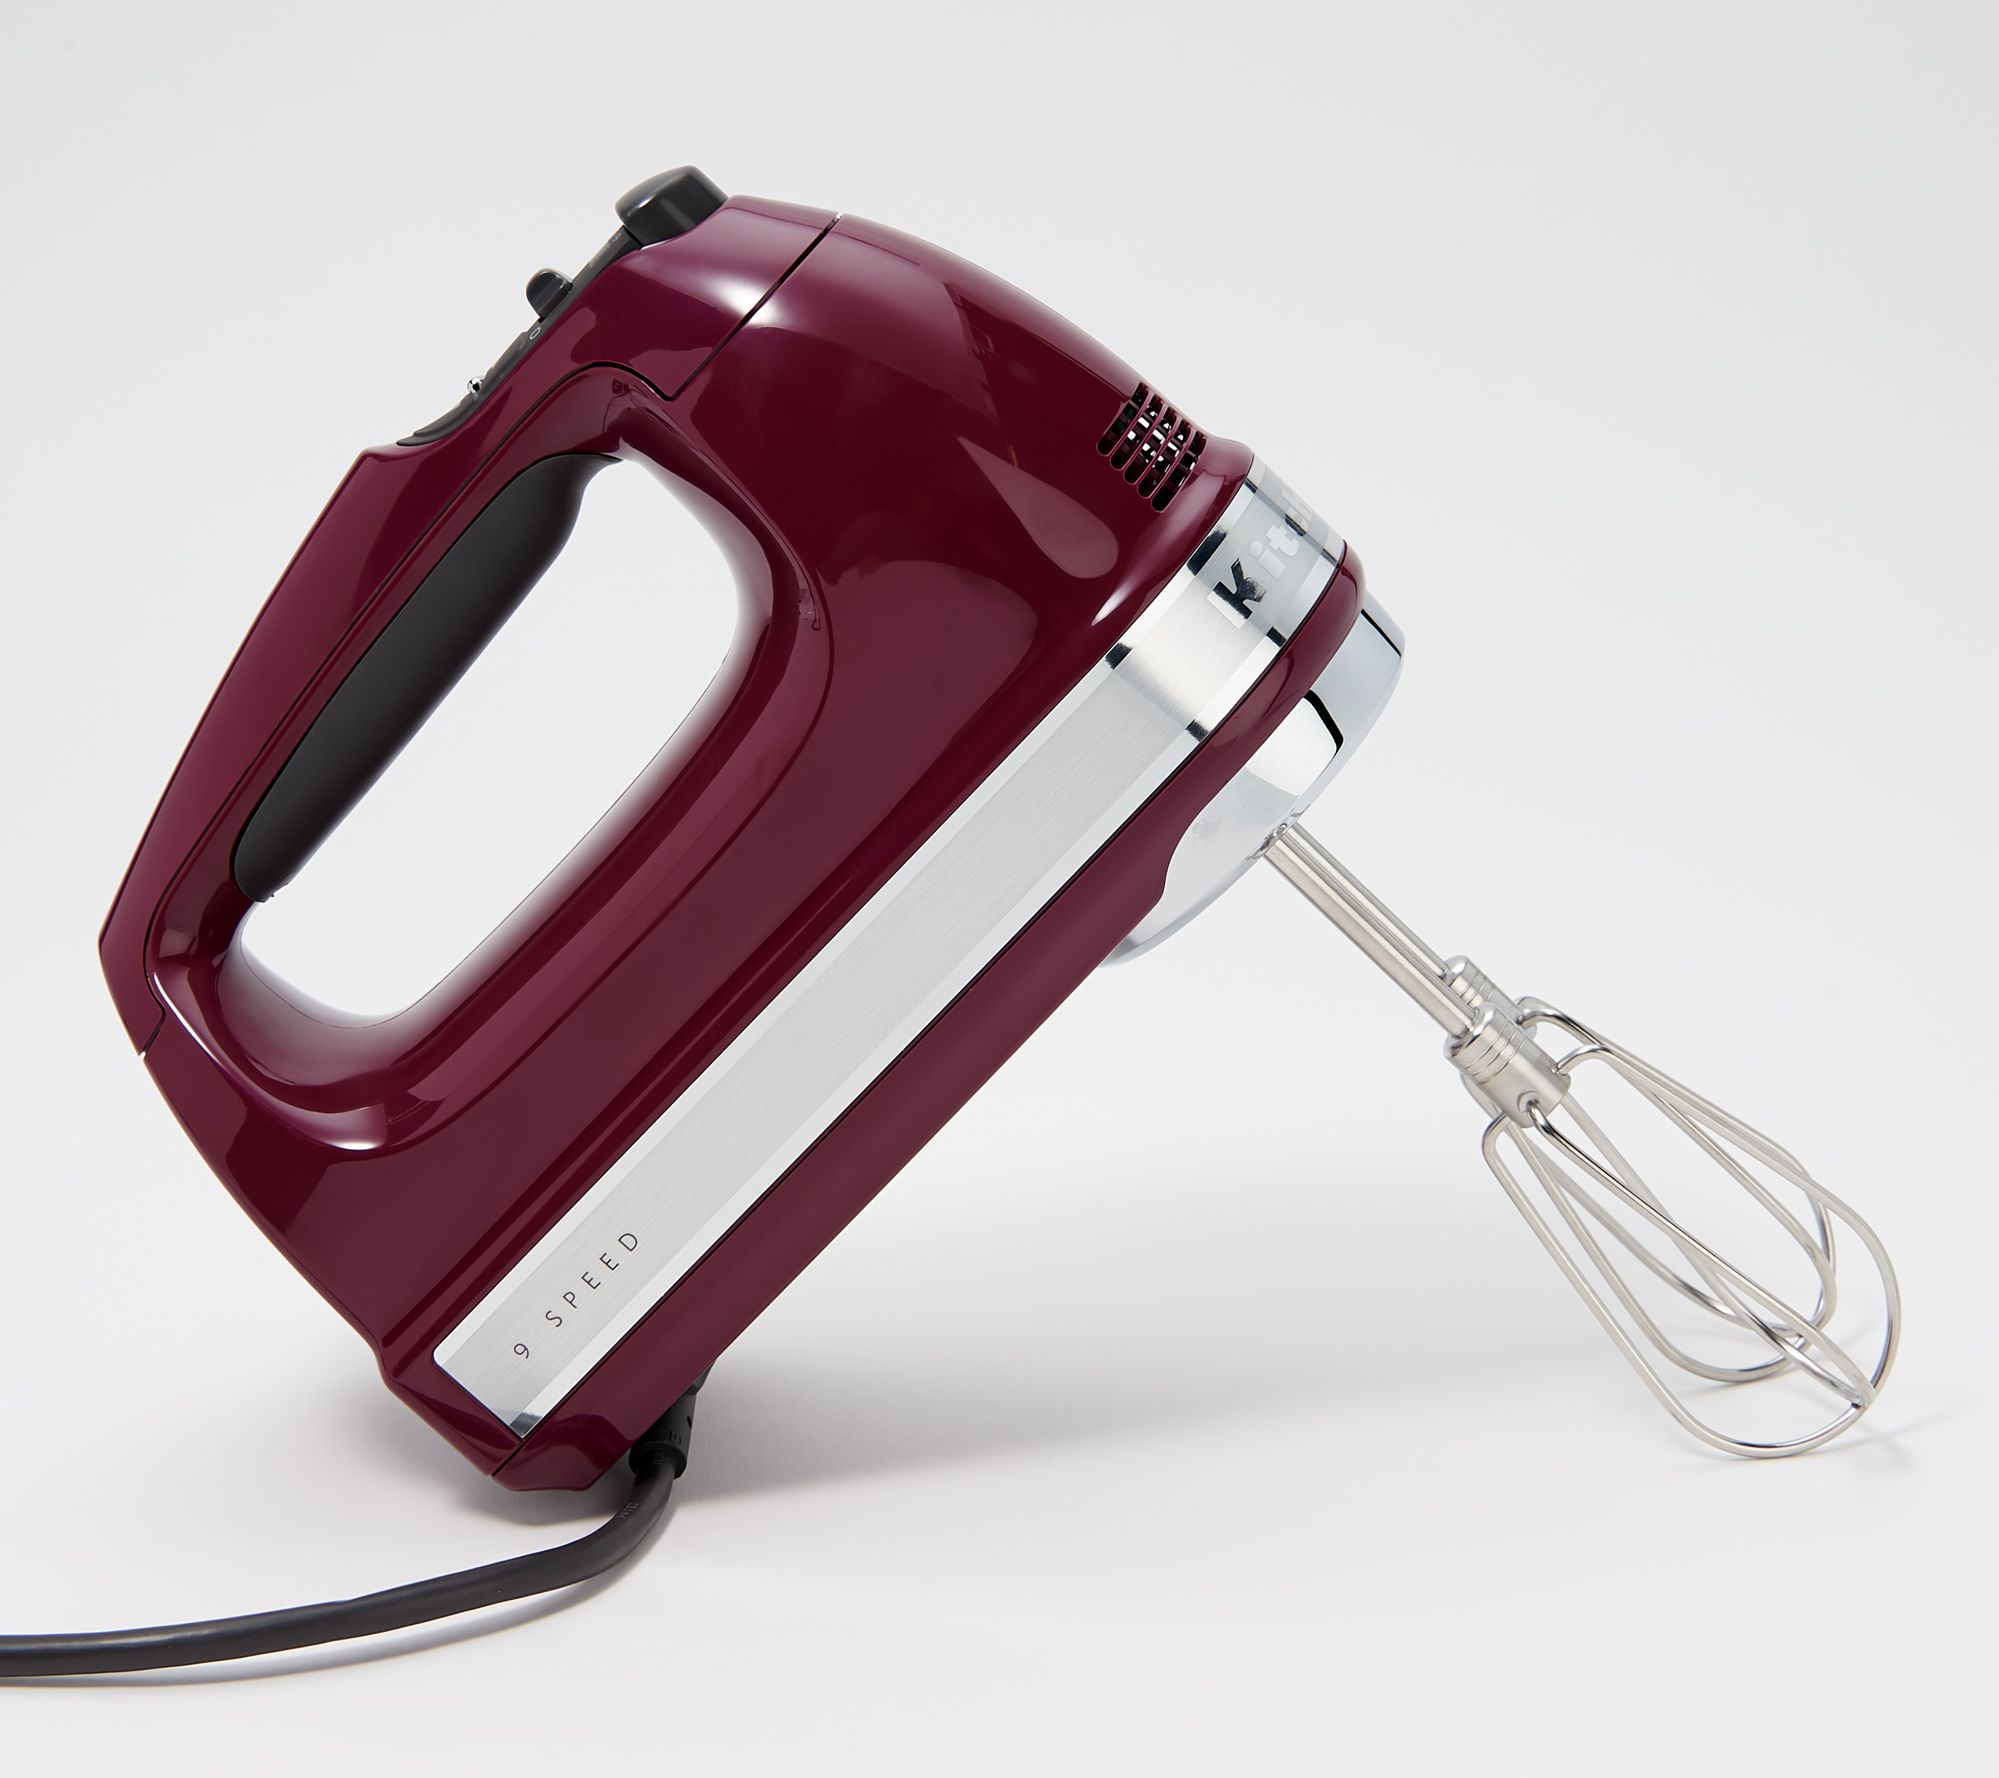 KitchenAid 9-speed Digital Hand Mixer w/ Wire Whisk & Blender Rod 